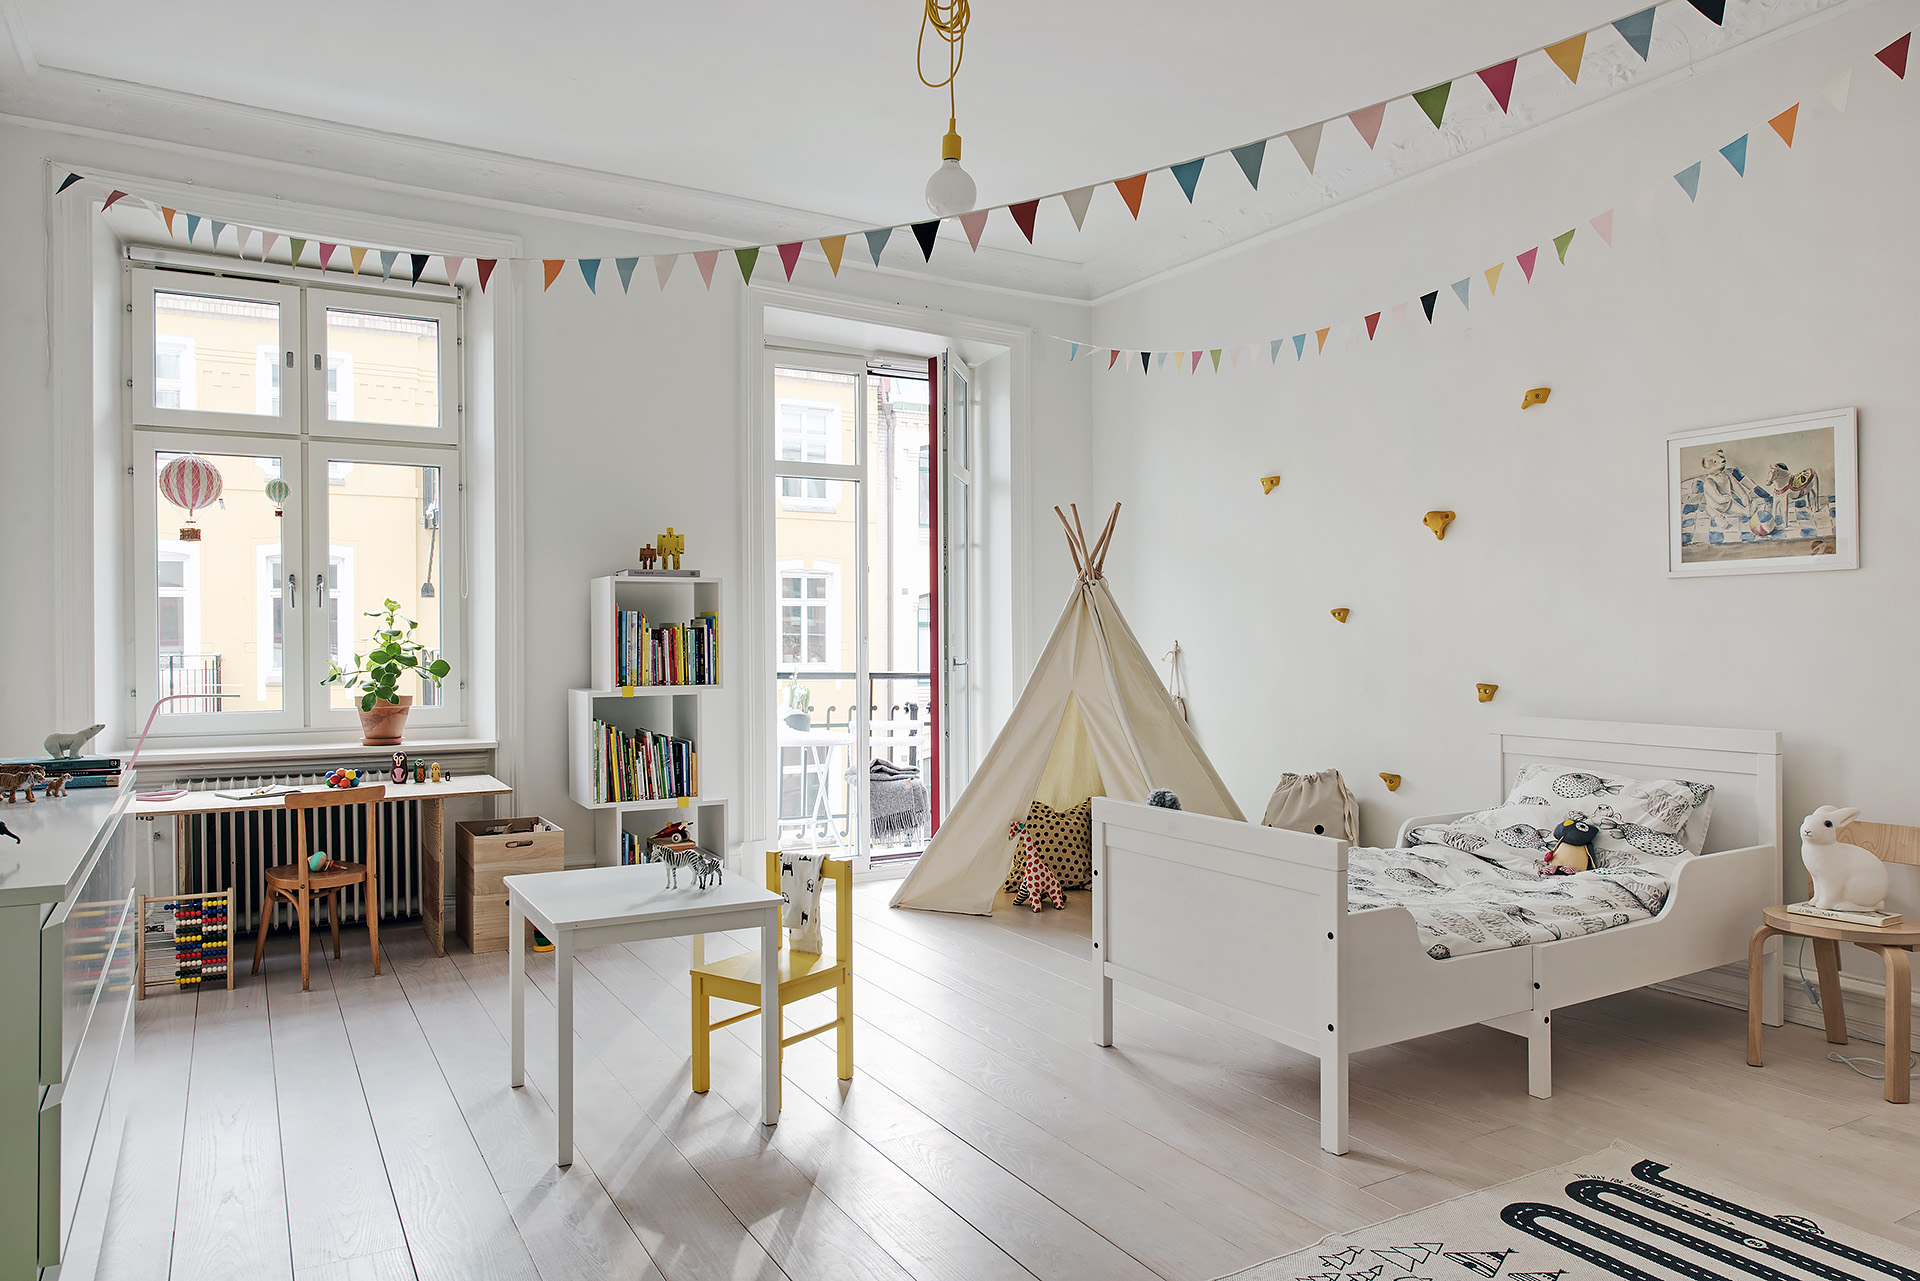 Resaltar Monografía Controversia Como decorar una habitación infantil en estilo nórdico | delikatissen